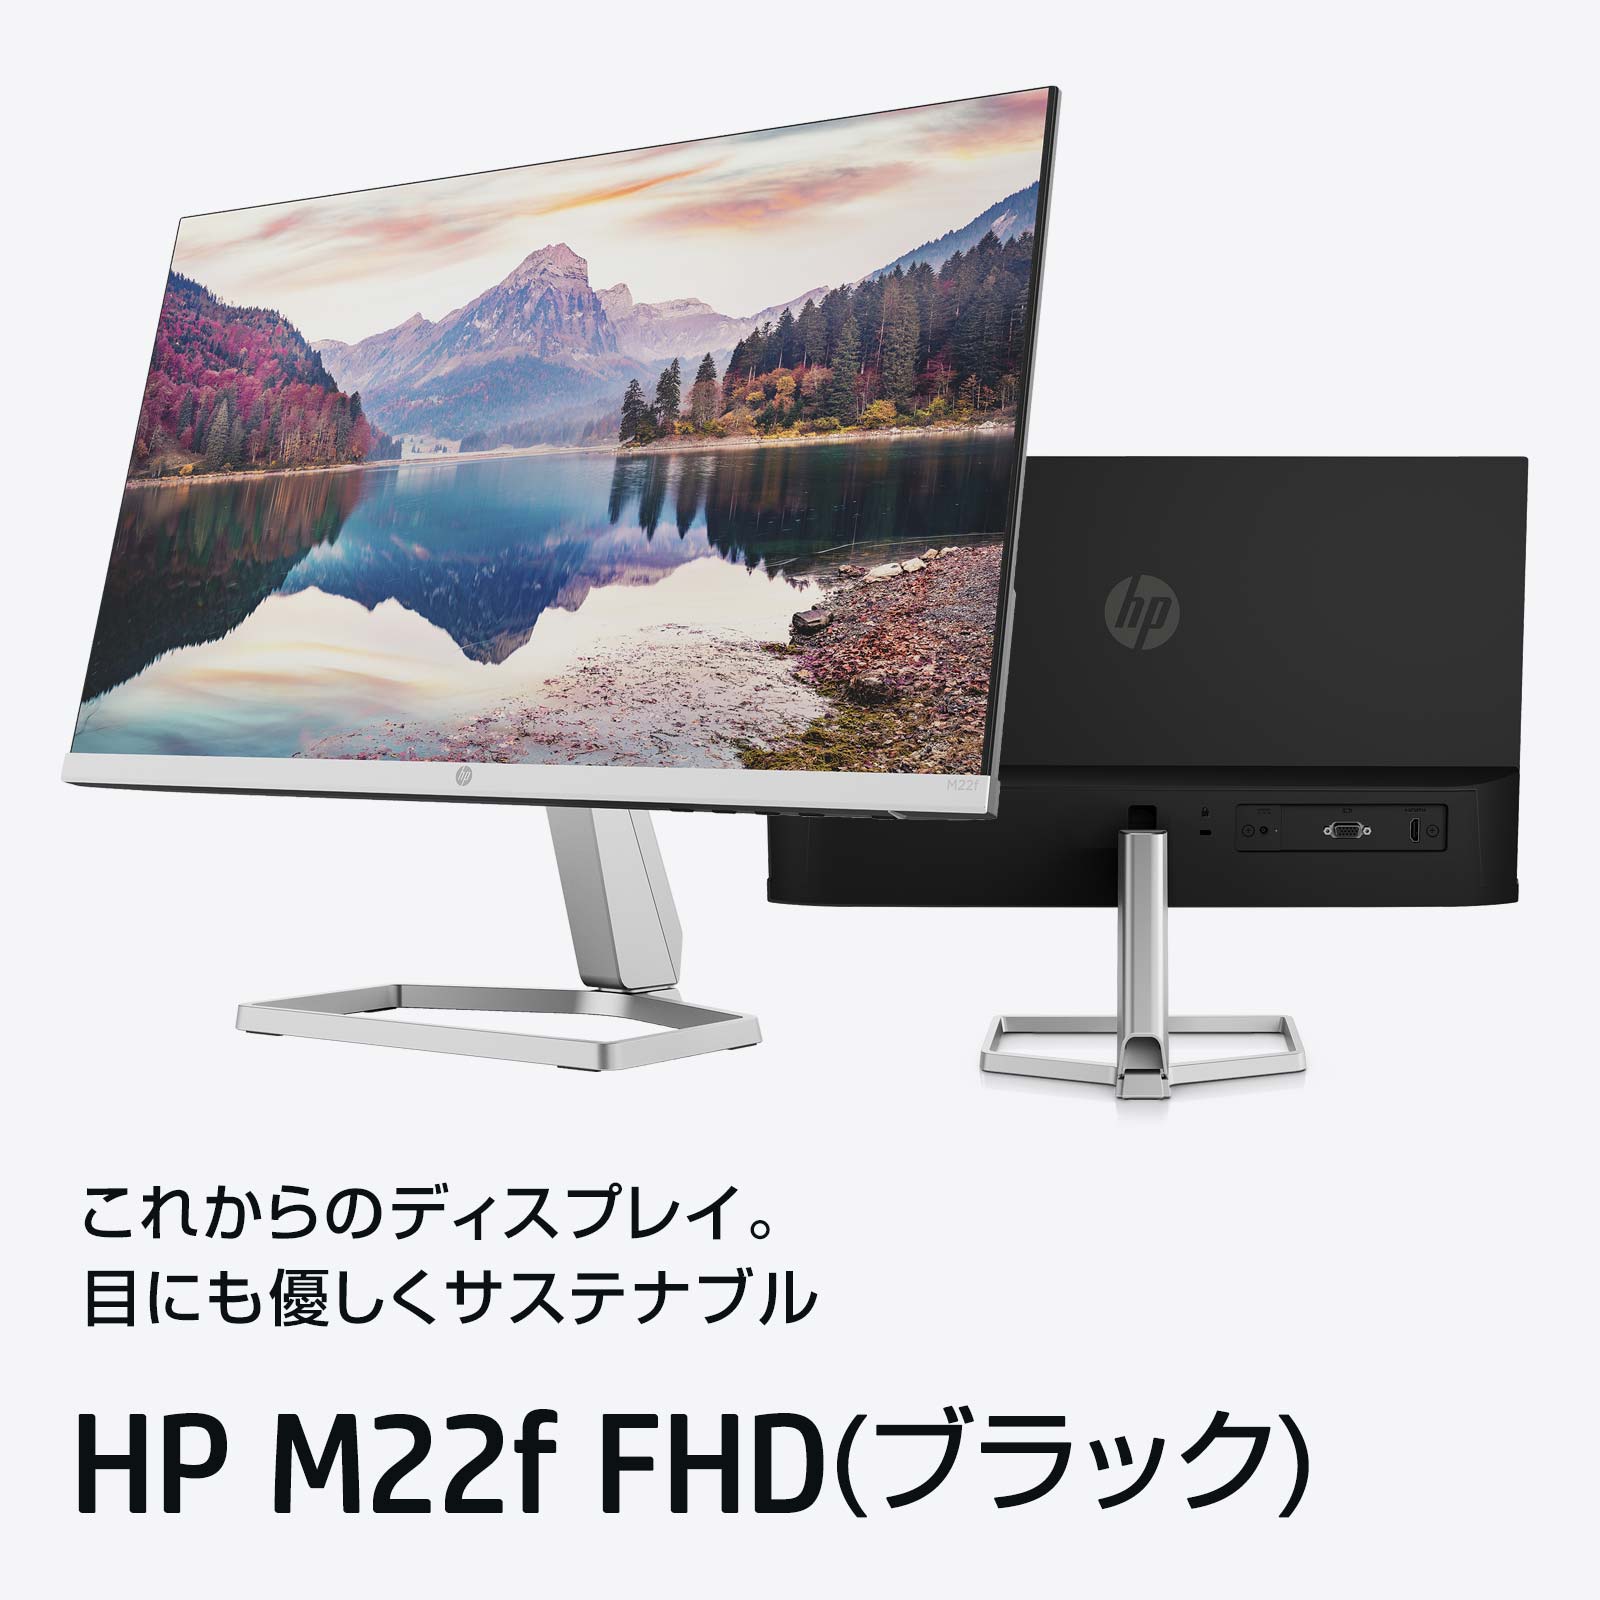 HP M22f FHD